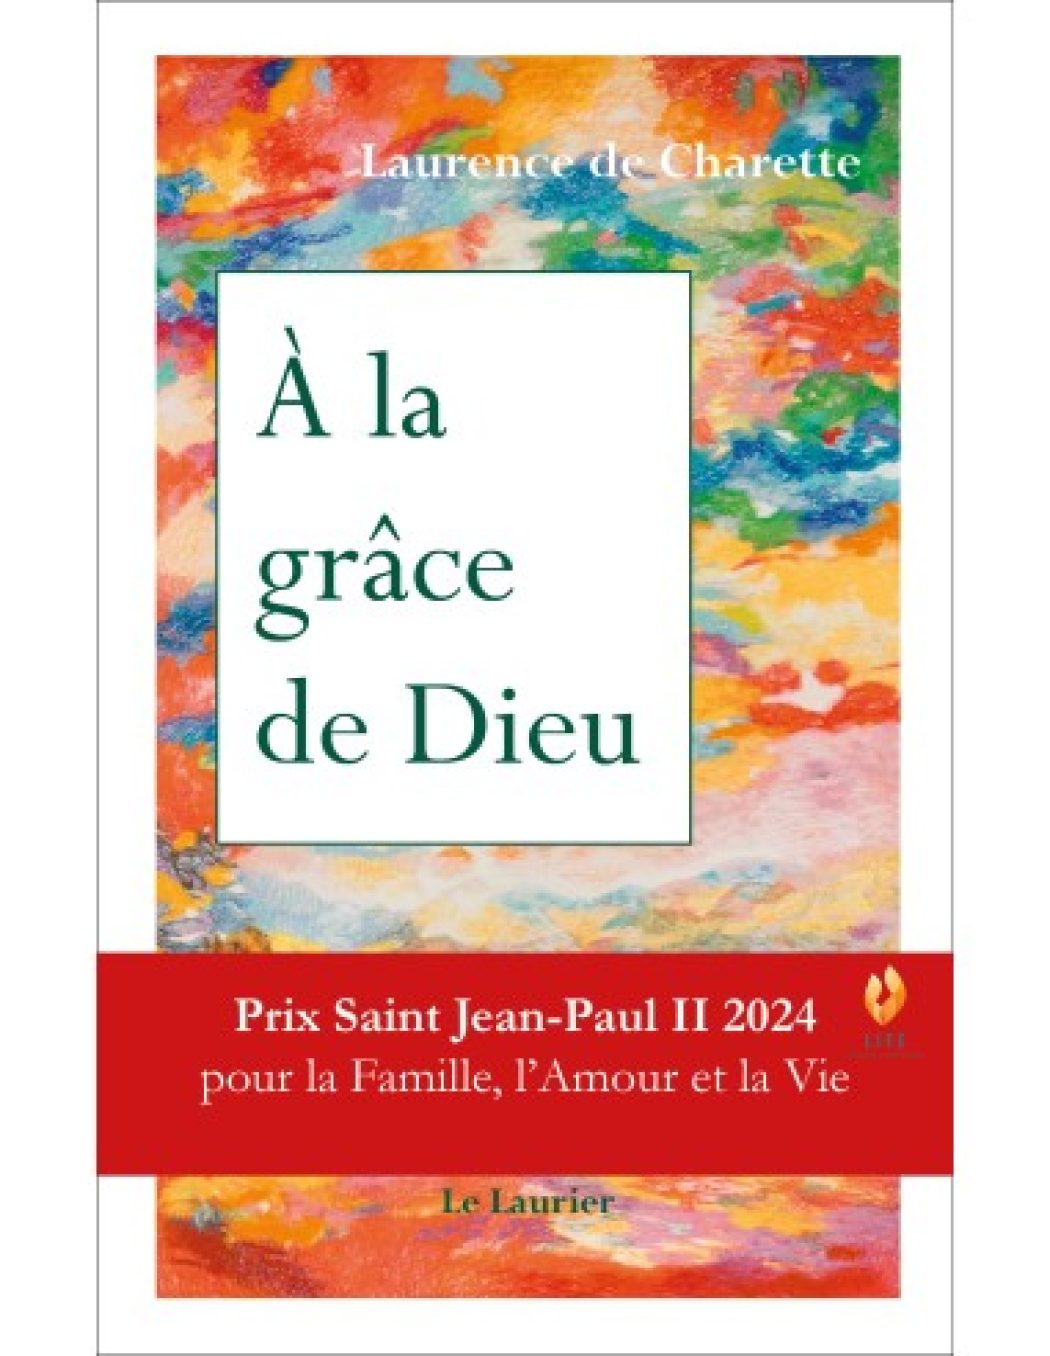 Laurence de Charette reçoit le prix Saint Jean-Paul II pour son livre «À la grâce de Dieu»